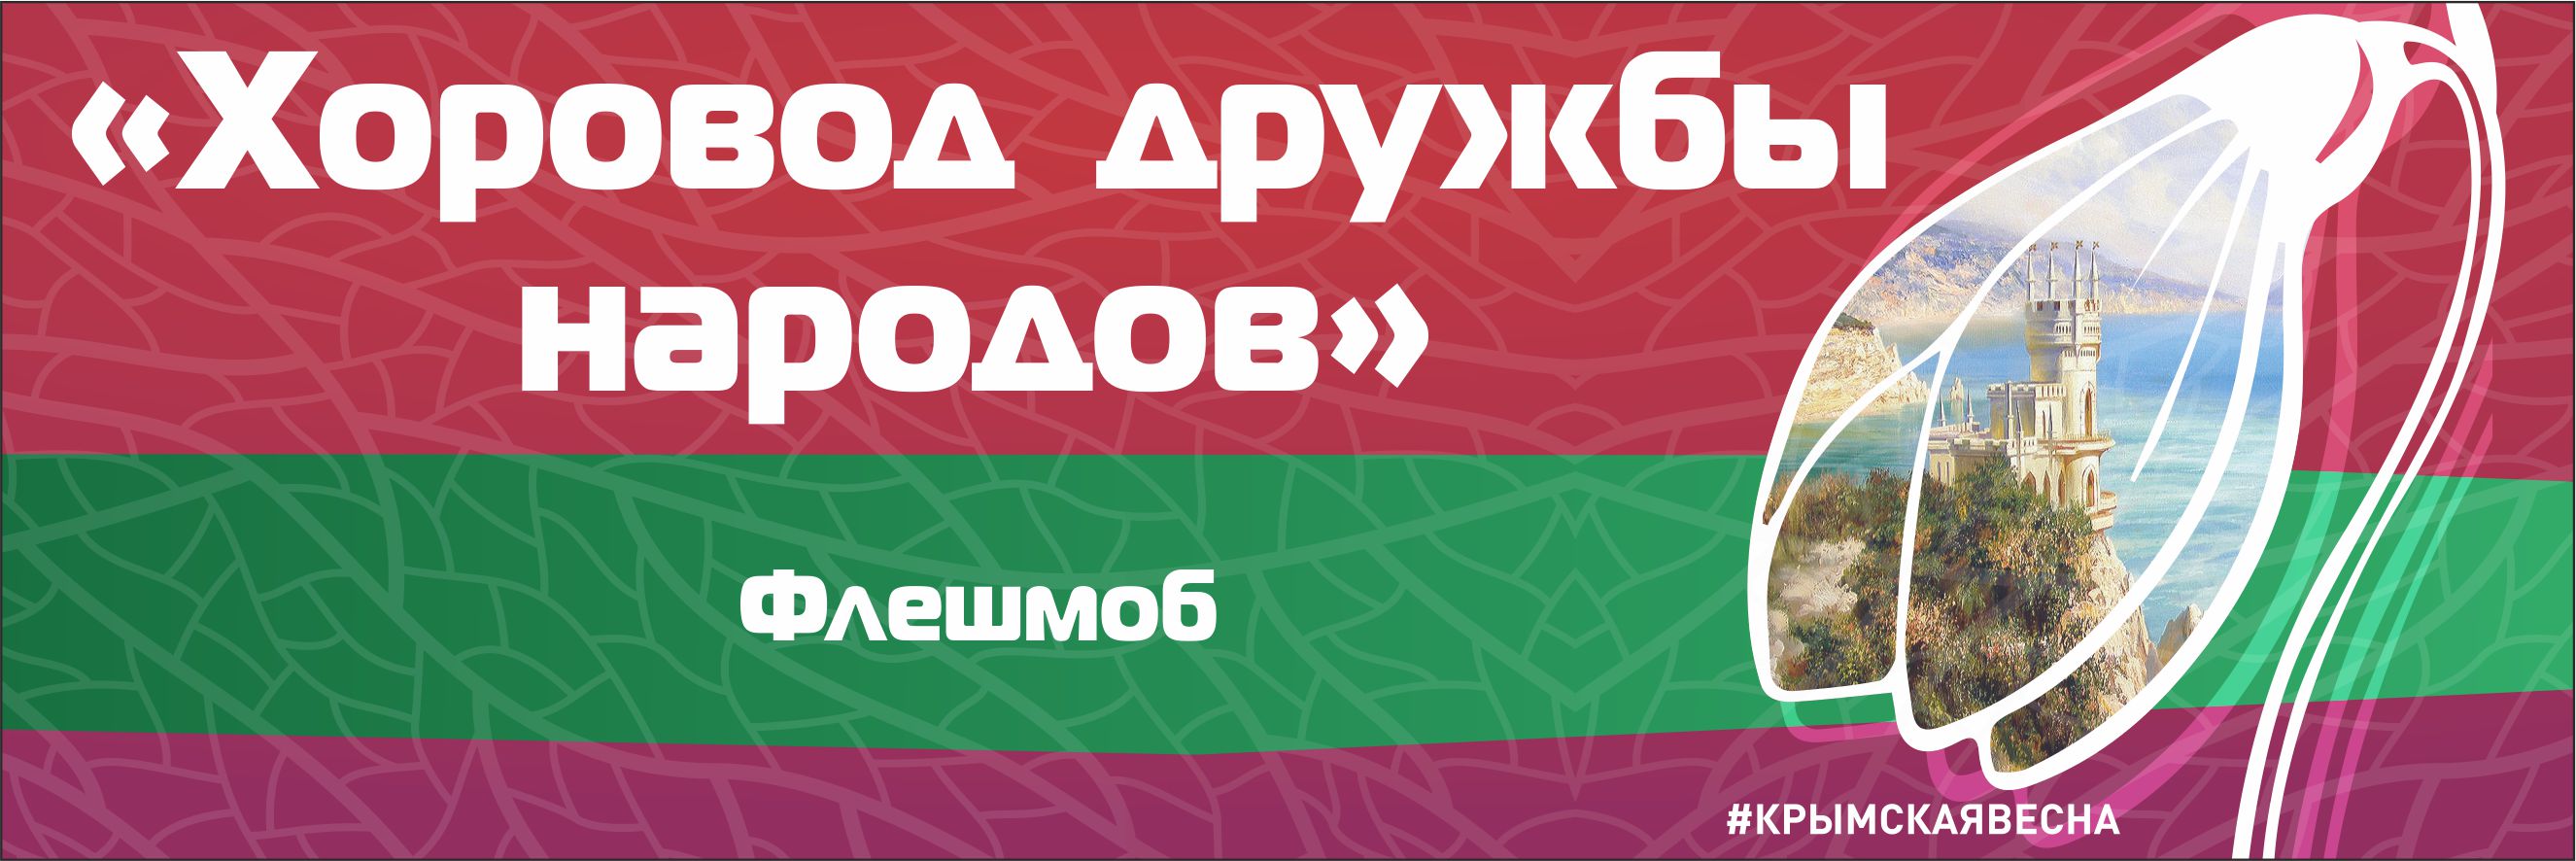 Флешмоб «Хоровод дружбы народов», посвященный «Крымской весне» состоится в Горно-Алтайске 